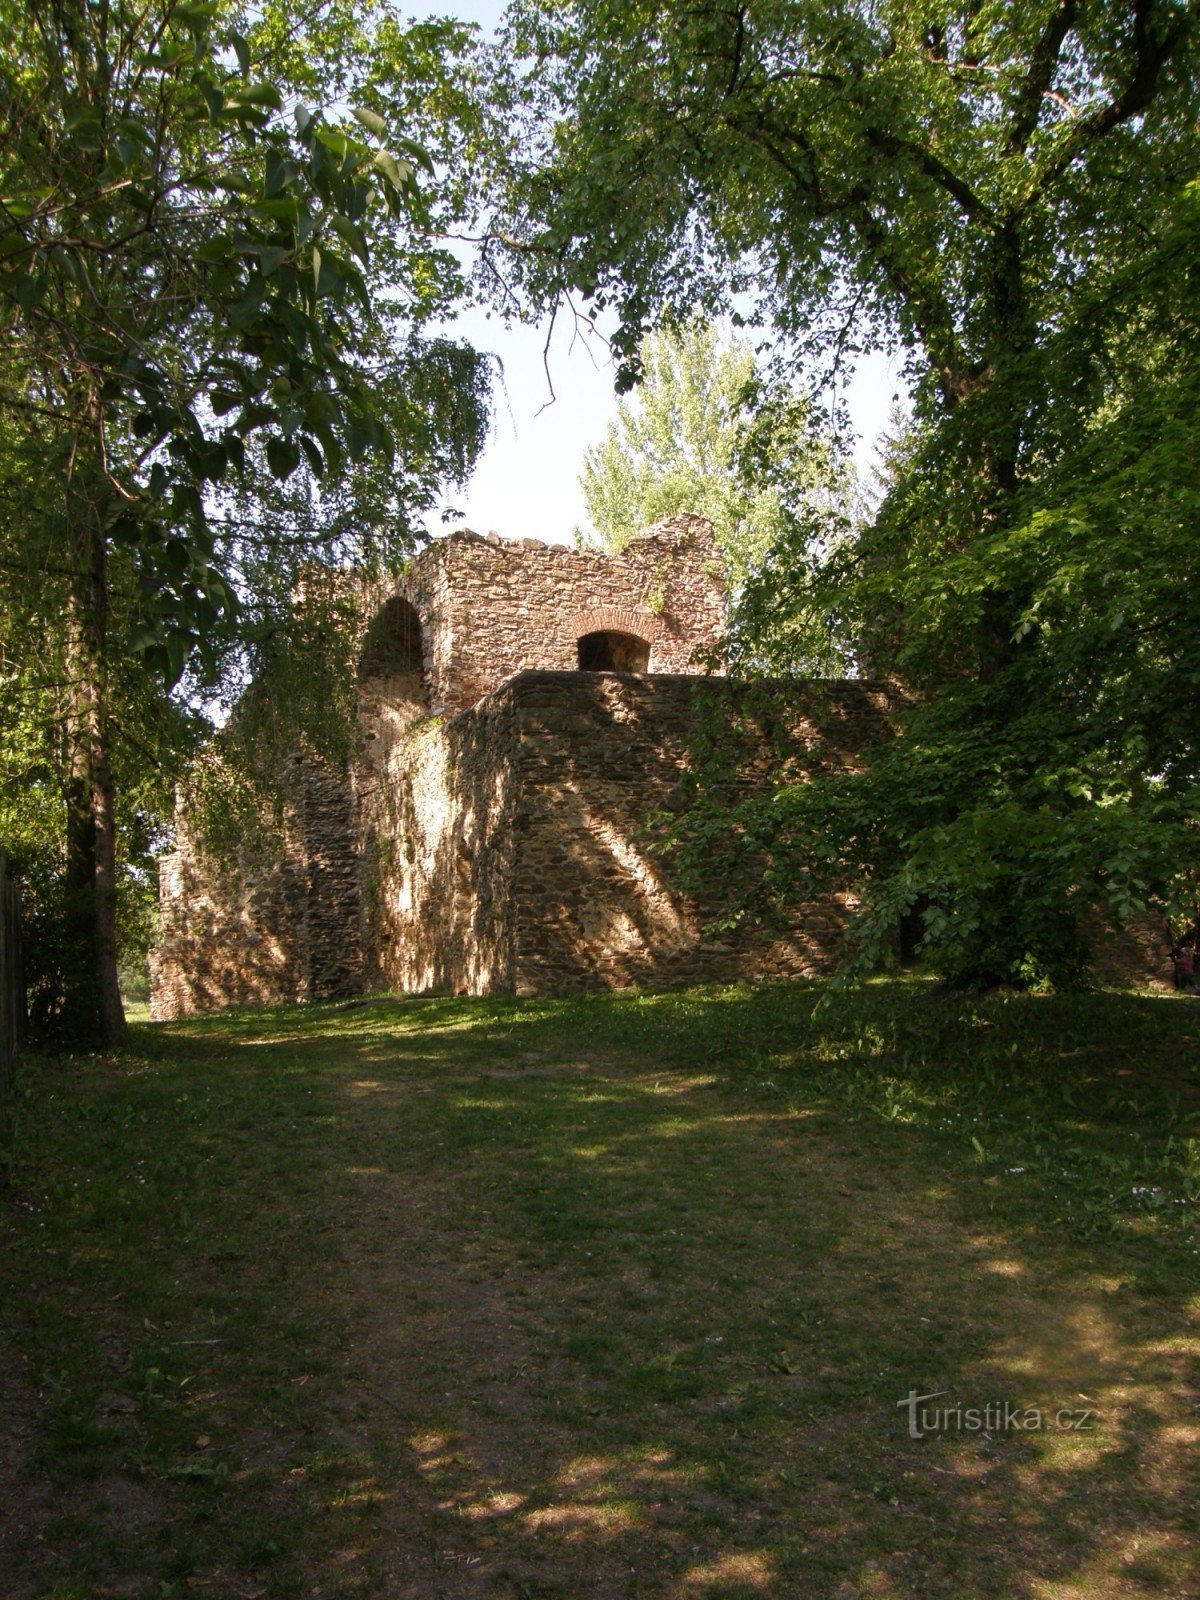 Крепость находится примерно в 70 м от центра села.